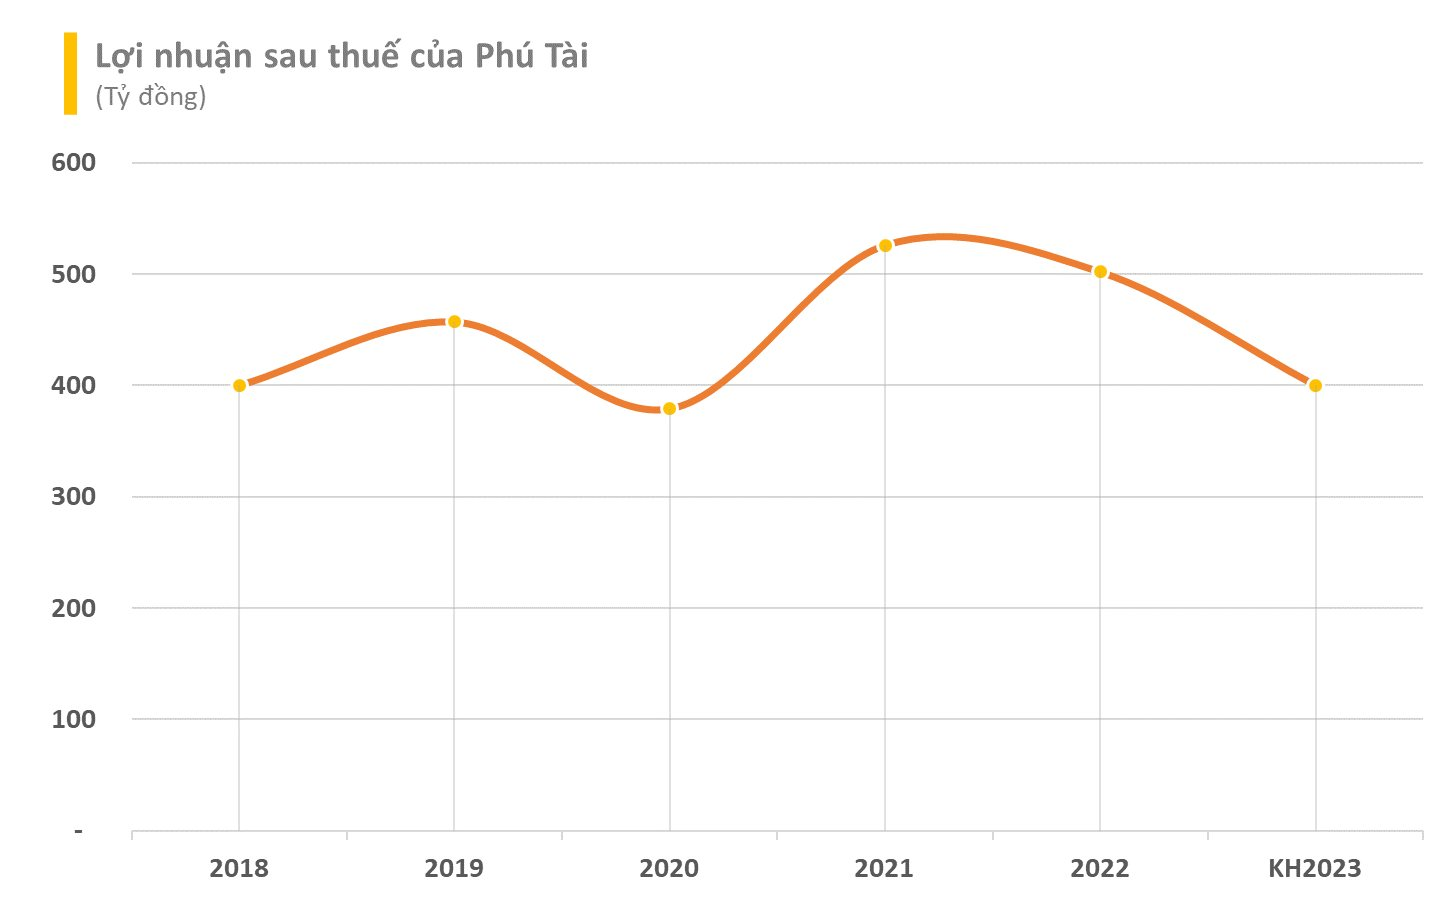 Xuất khẩu gặp khó, loạt tên tuổi lớn Vĩnh Hoàn, May Thành Công, Phú Tài,...đồng loạt đặt kế hoạch kinh doanh 2023 giảm sâu - Ảnh 5.